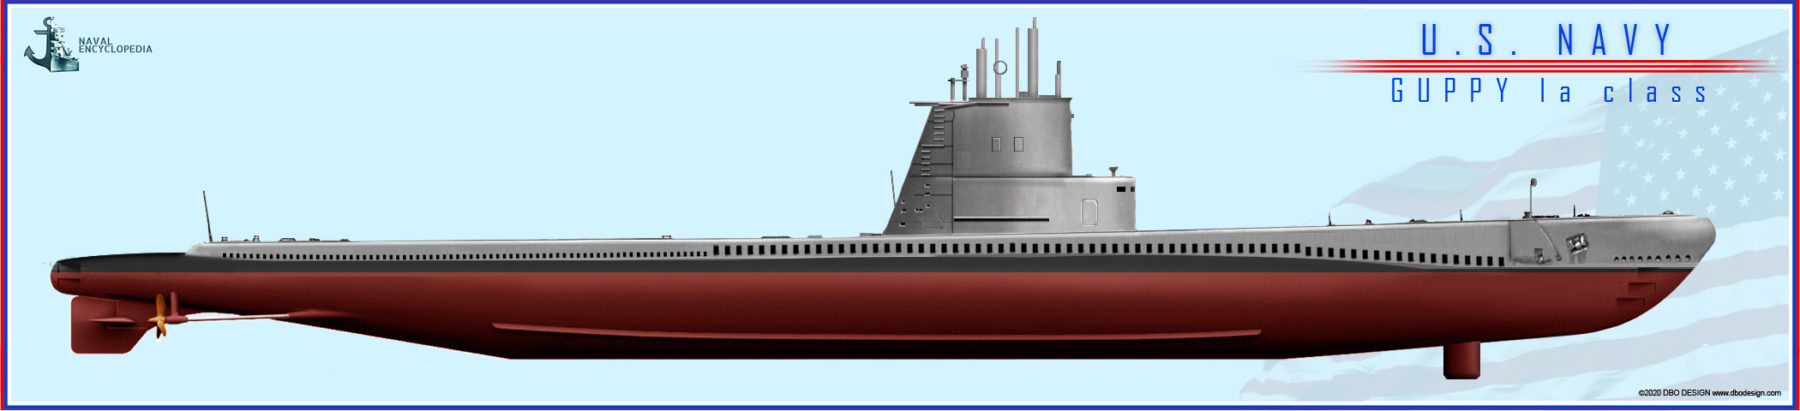 www.naval-encyclopedia.com